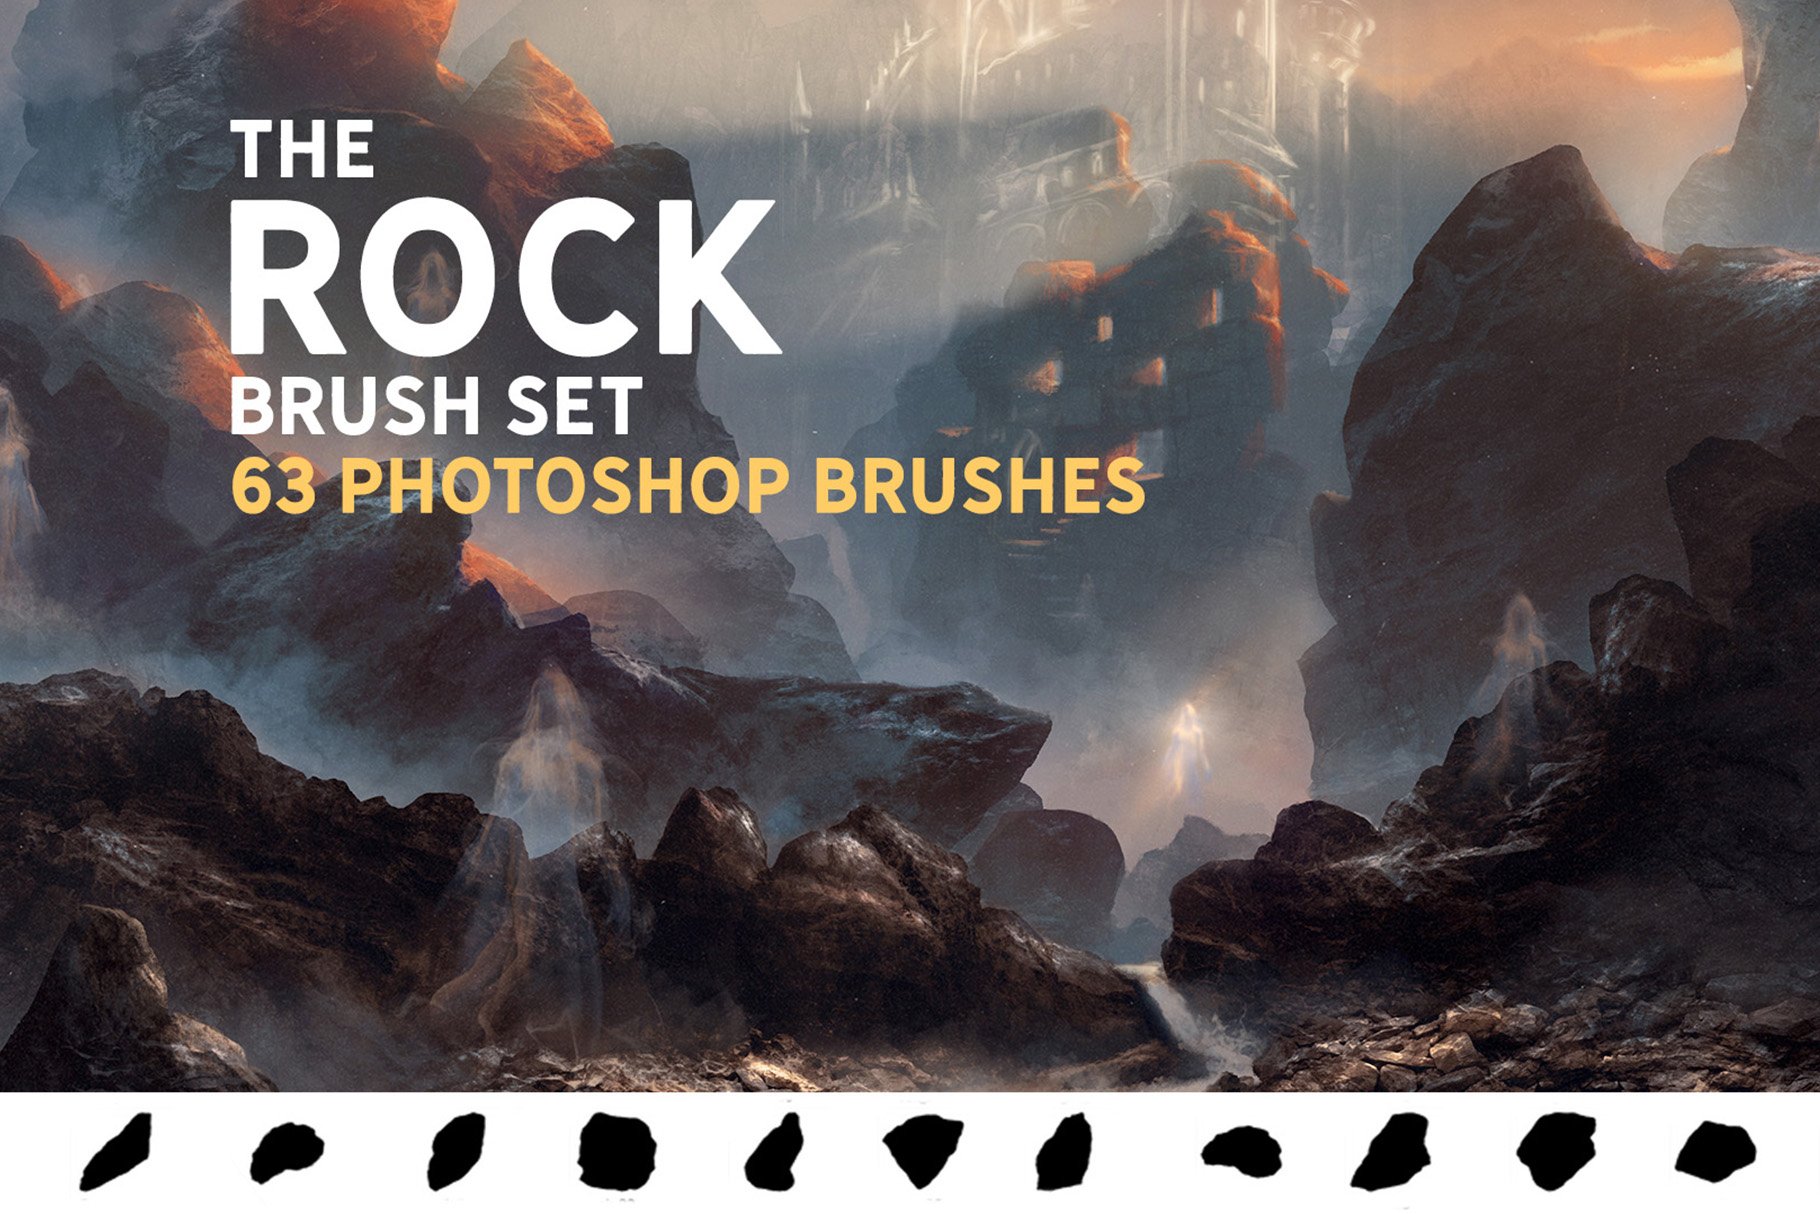 The Rock brush setcover image.